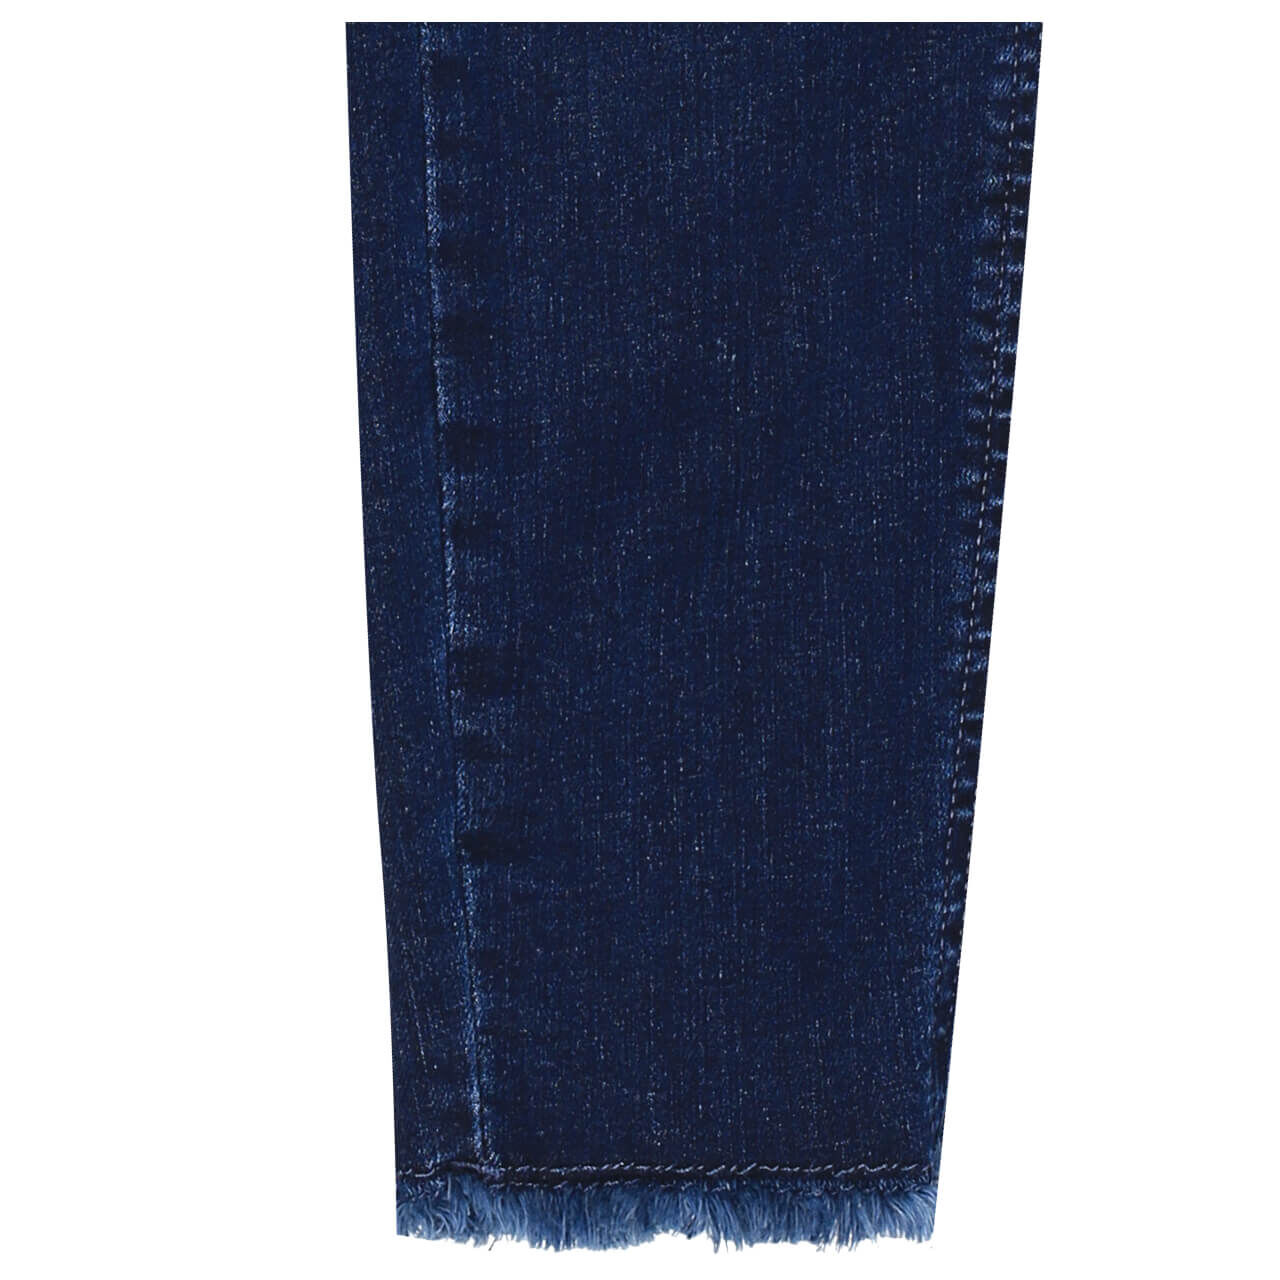 Only Jeans Blush Ankle Skinny für Damen in Dunkelblau verwaschen mit Destroyed-Effekten